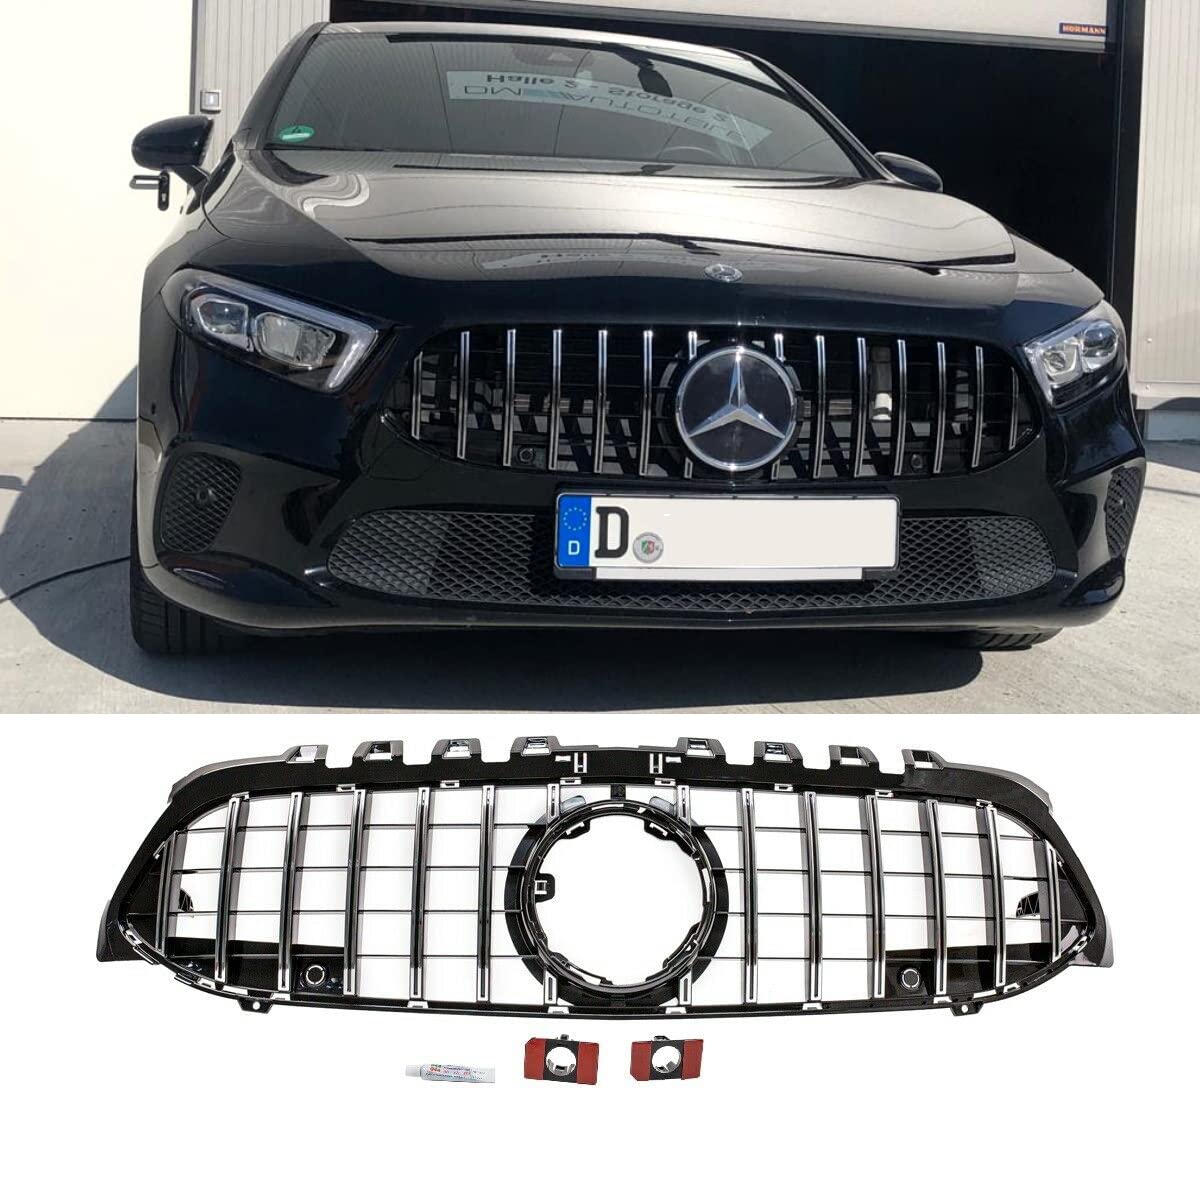 Kühlergrill Schwarz Chrom kompatibel für Mercedes A-Klasse W177 Bj ab 2018 ohne Kamera Loch auf Sport-Panamericana GT DM Autoteile 2724 von DM Autoteile